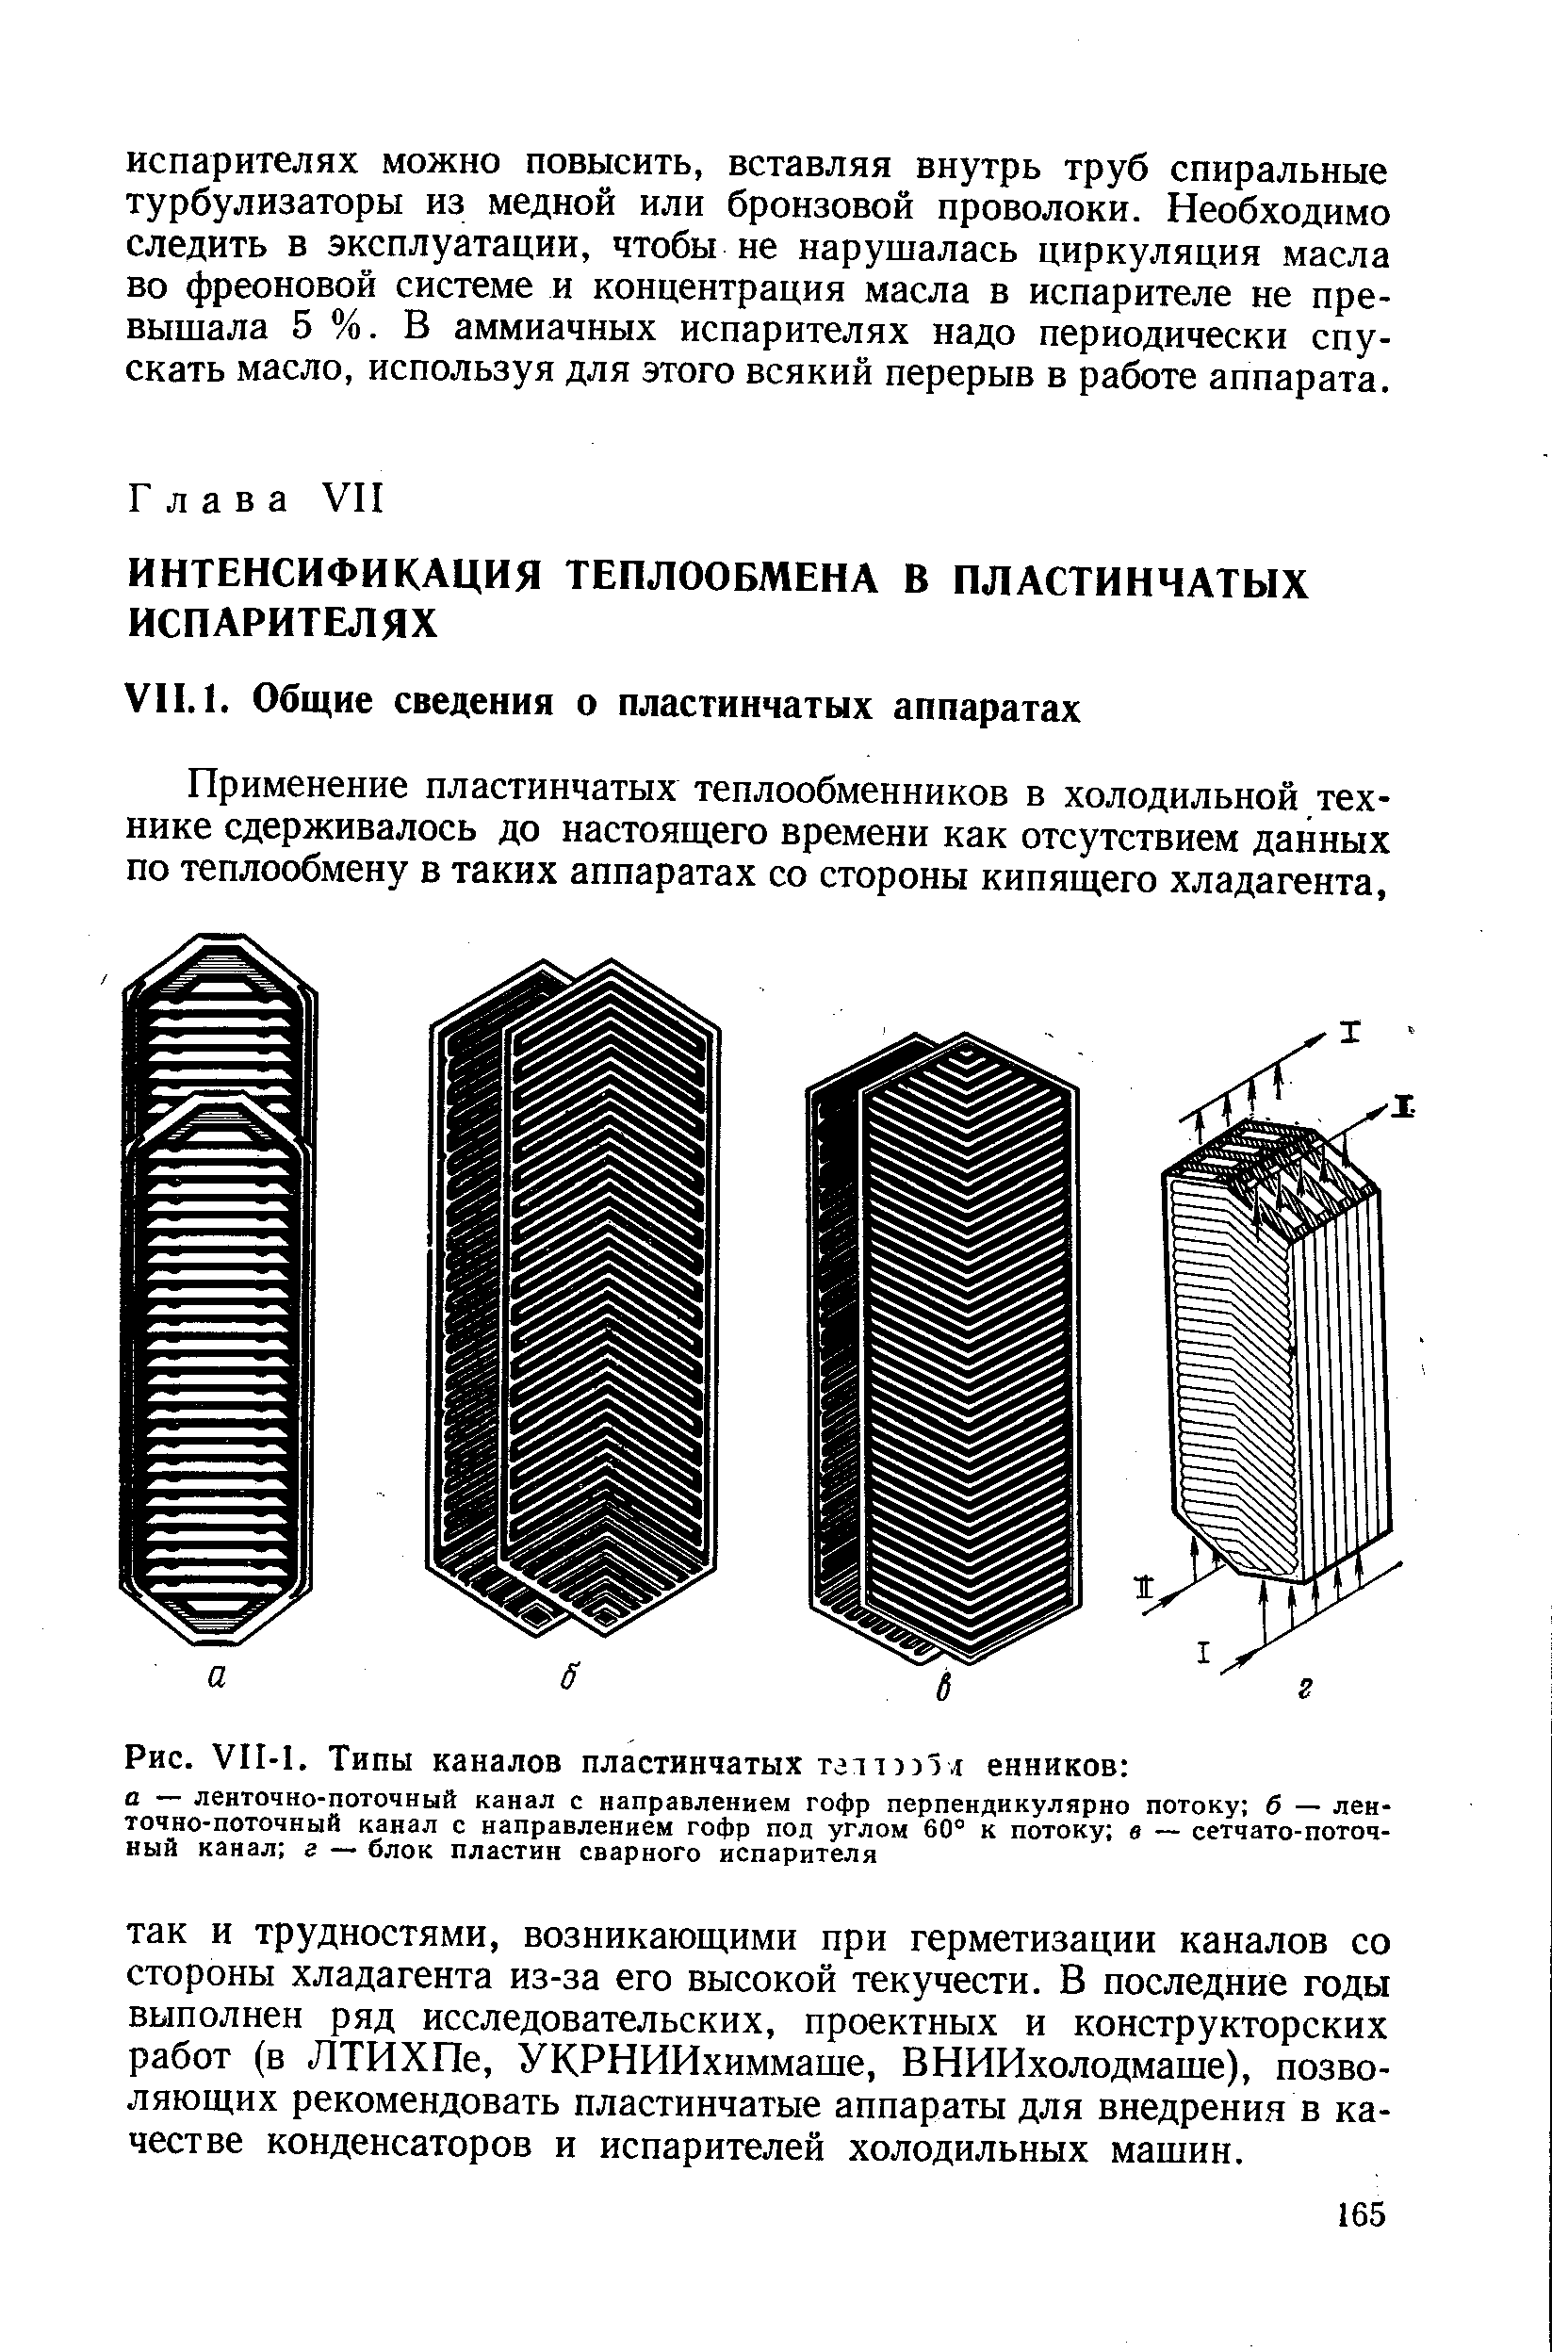 Применение пластинчатых теплообменников в холодильной технике сдерживалось до настоящего времени как отсутствием данных по теплообмену в таких аппаратах со стороны кипящего хладагента.